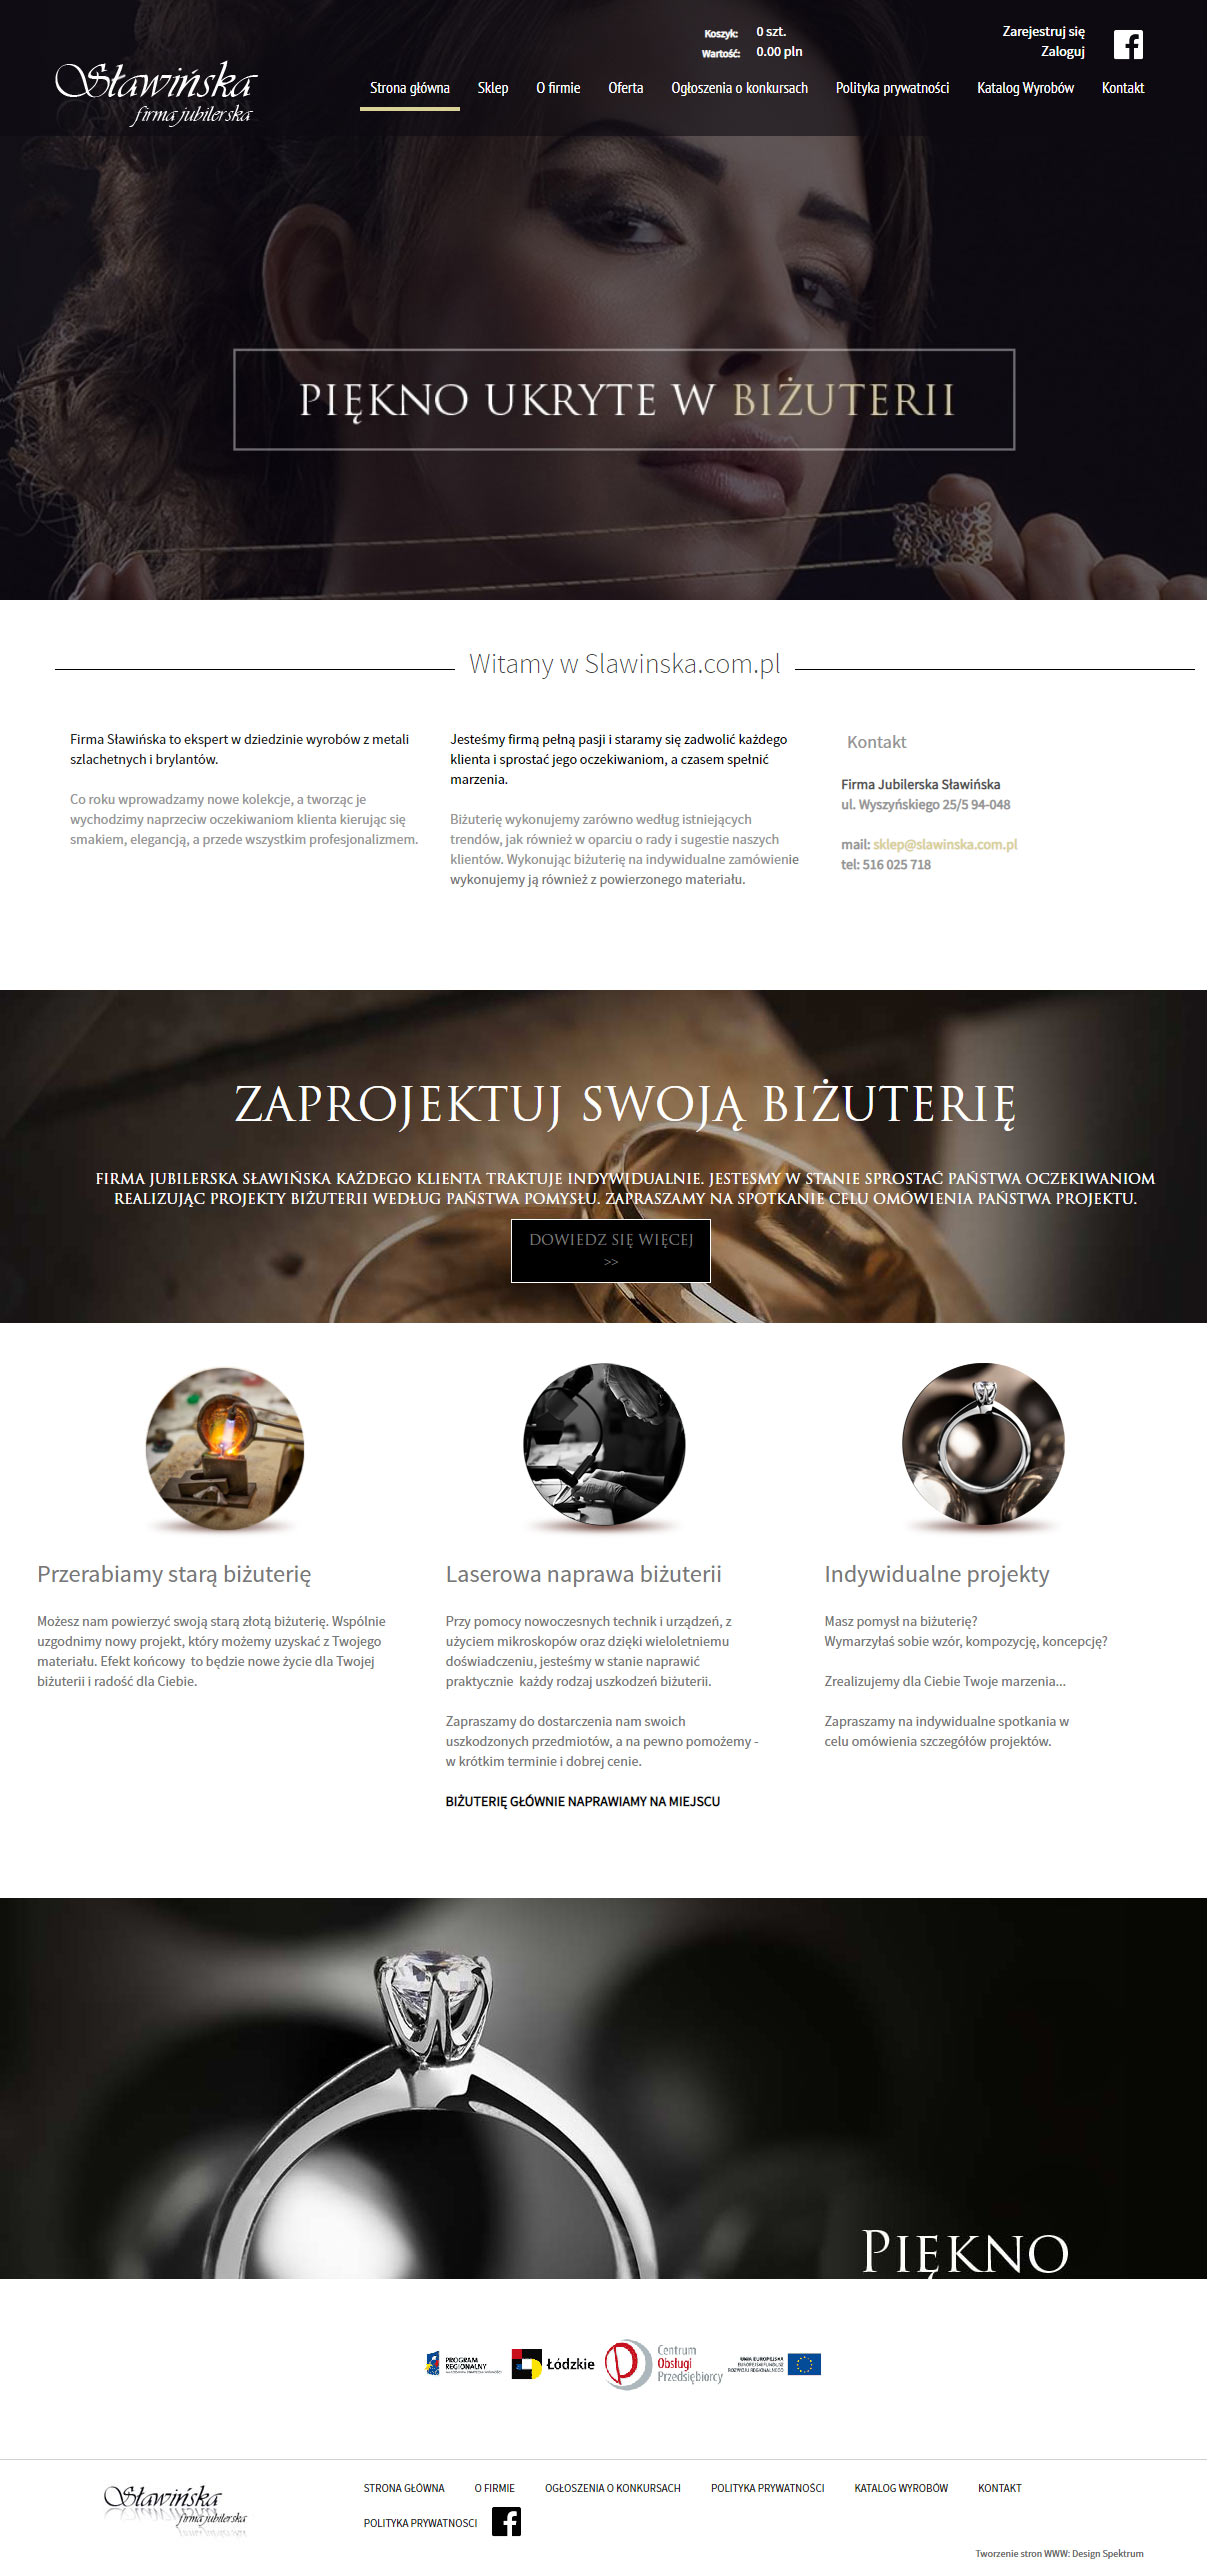 slawinska.com.pl